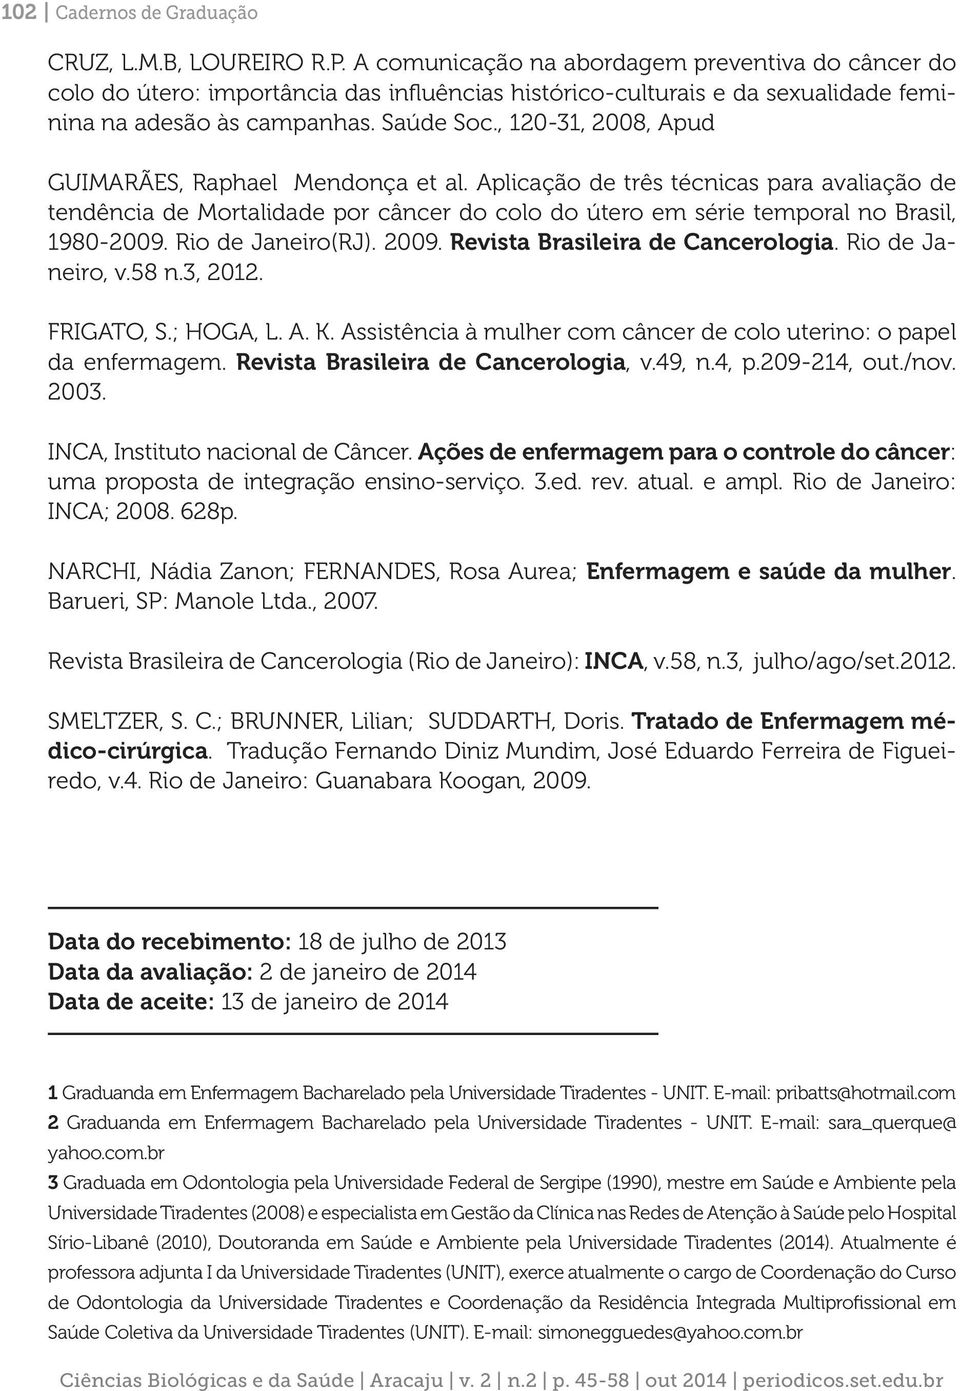 , 120-31, 2008, Apud GUIMARÃES, Raphael Mendonça et al. Aplicação de três técnicas para avaliação de tendência de Mortalidade por câncer do colo do útero em série temporal no Brasil, 1980-2009.